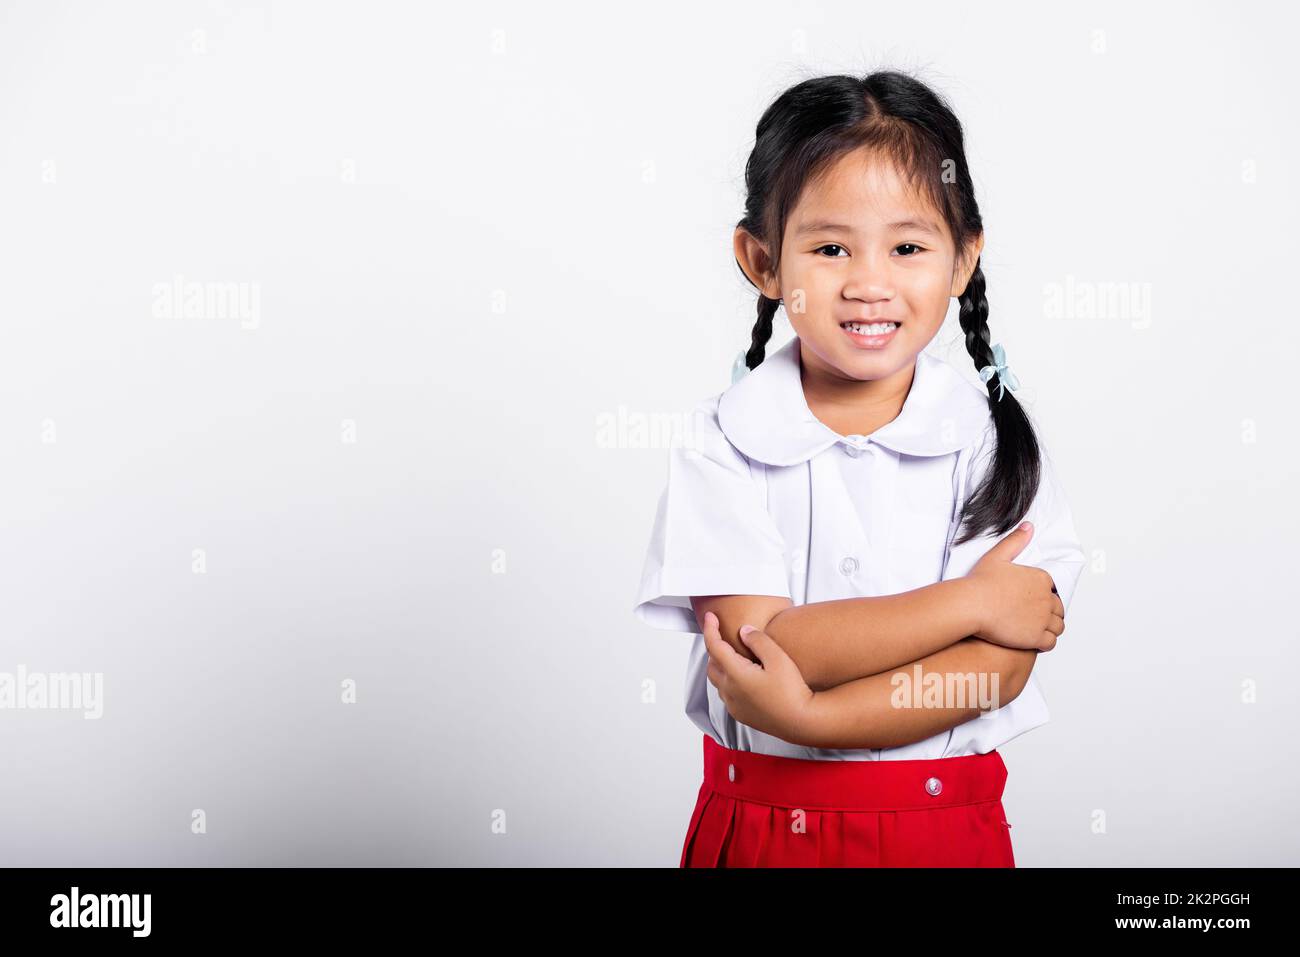 Asiatisches Kleinkind lächelt fröhlich und trägt Thai-Uniform als Studentin, roter Rock mit zusammengeklappten Armen Stockfoto